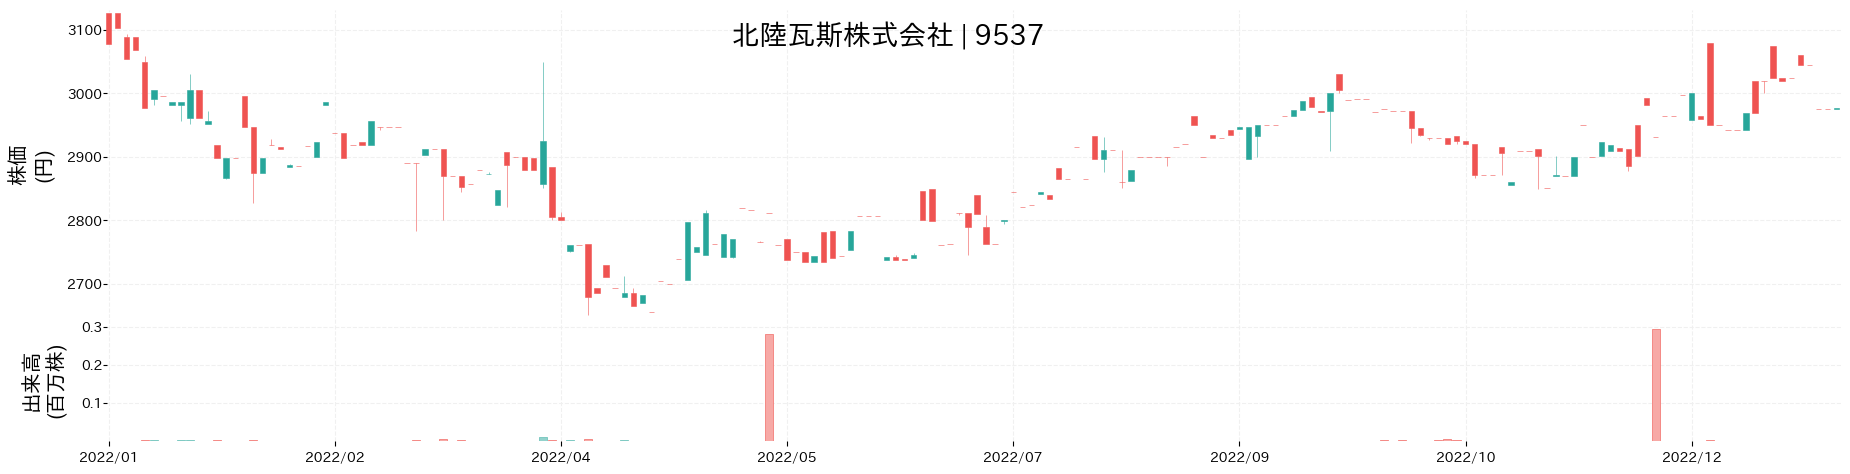 北陸瓦斯の株価推移(2022)